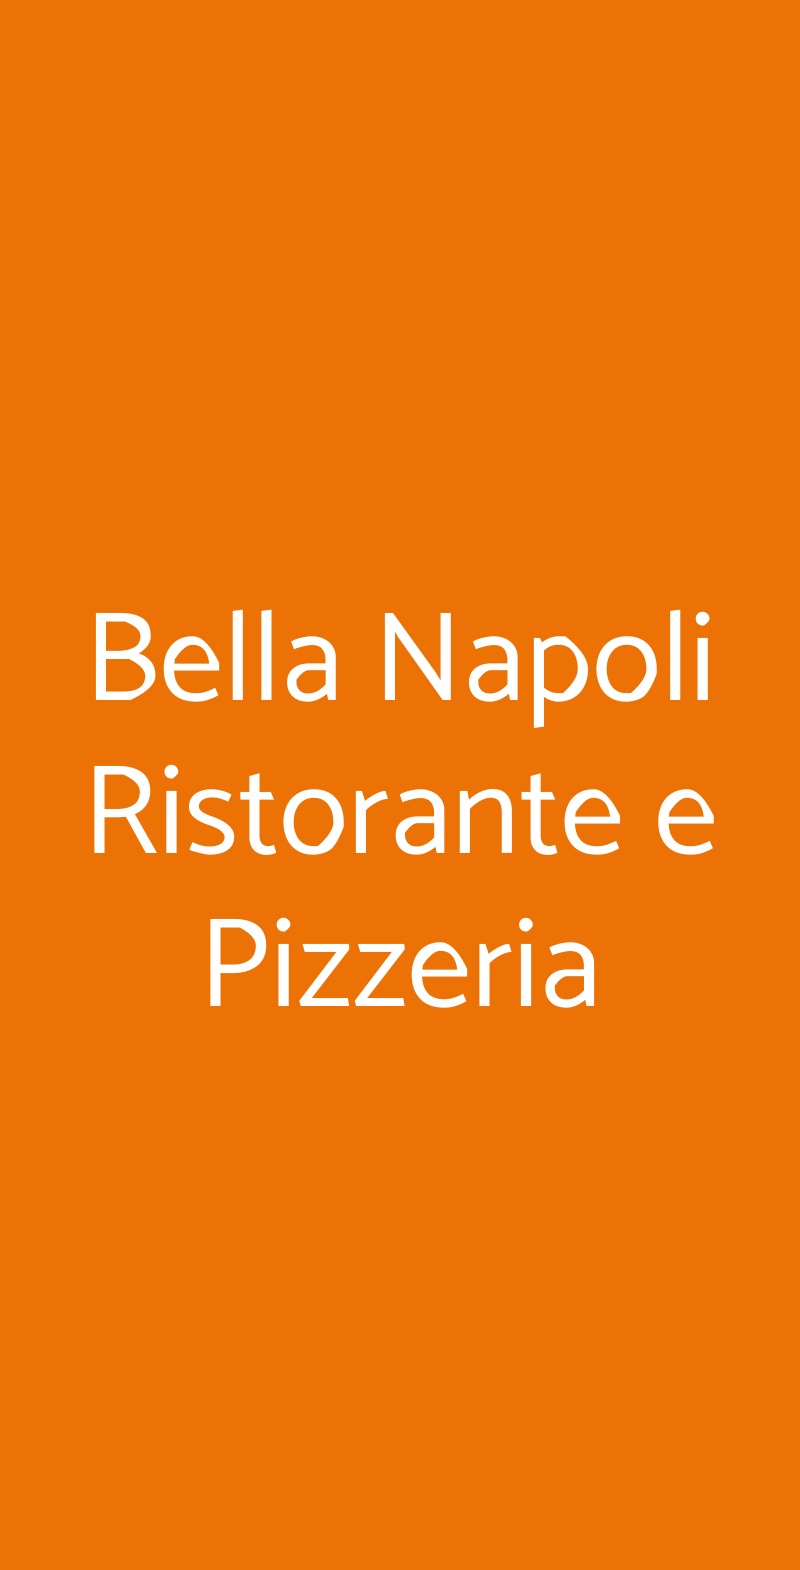 Bella Napoli Ristorante e Pizzeria Bergamo menù 1 pagina